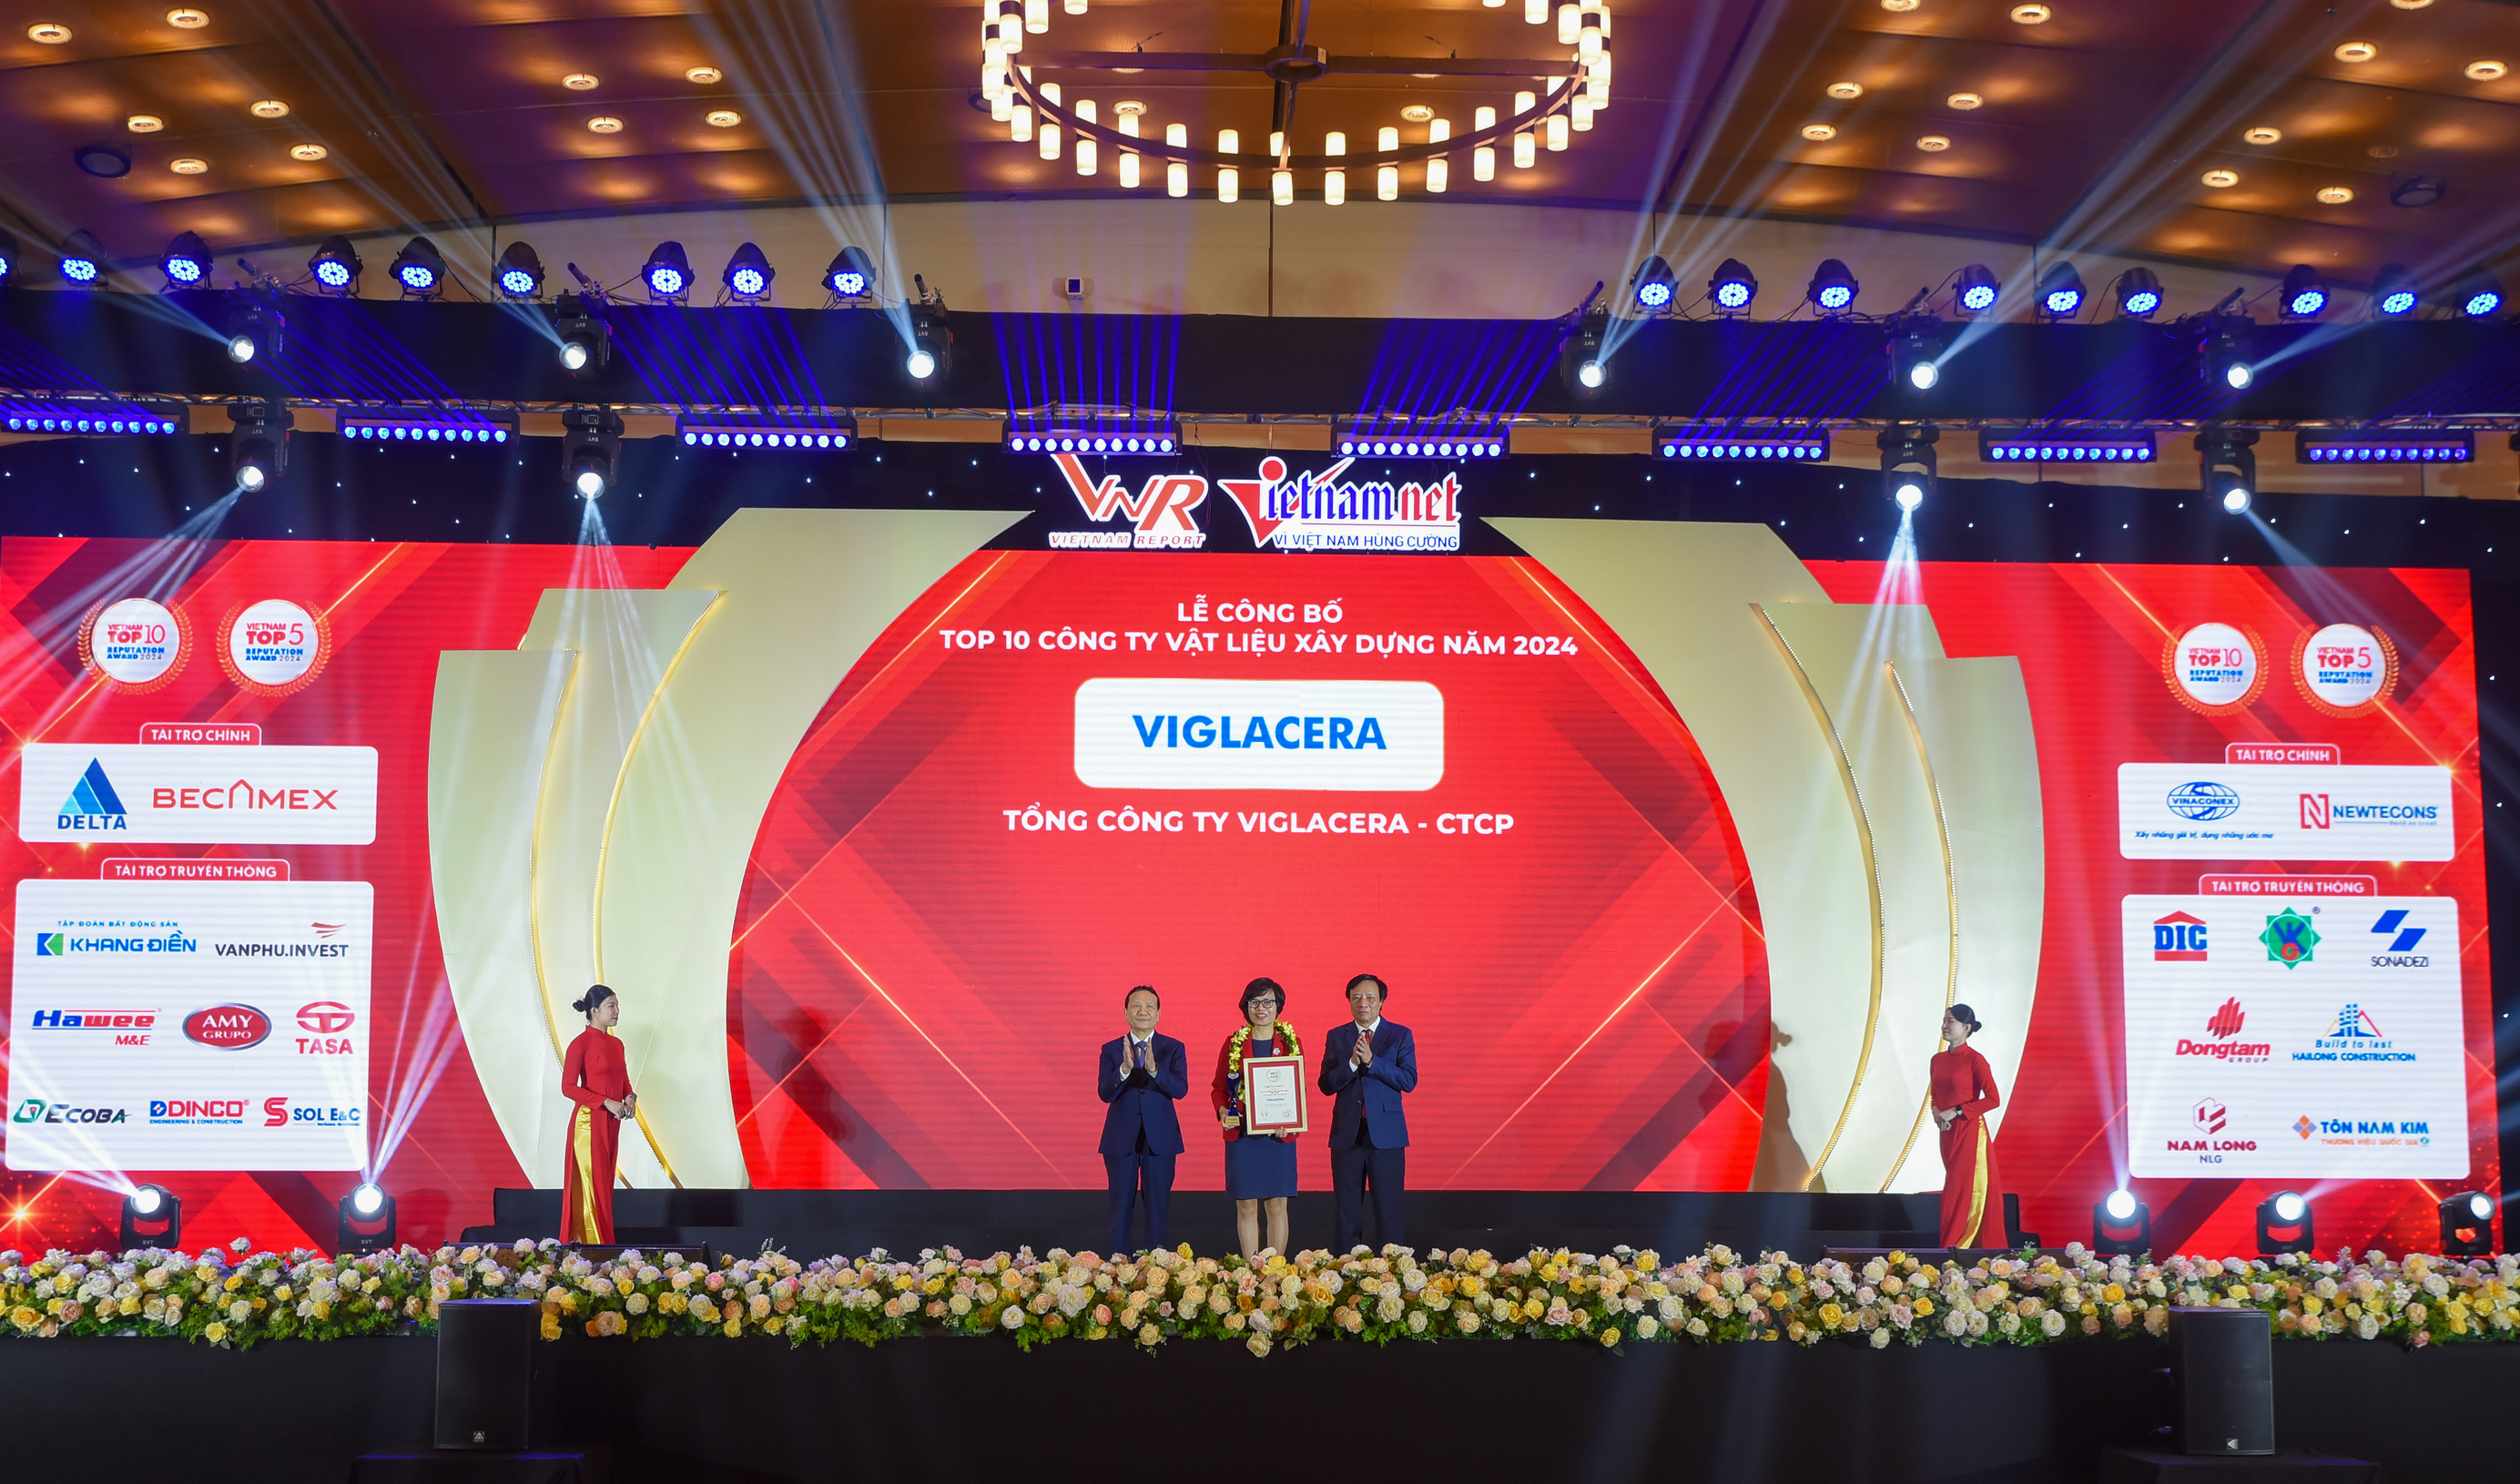 Viglacera thăng hạng trong bảng xếp hạng Top 500 doanh nghiệp lớn nhất Việt Nam (VNR500) và đứng đầu danh sách Top 10 công ty sản xuất Vật liệu xây dựng